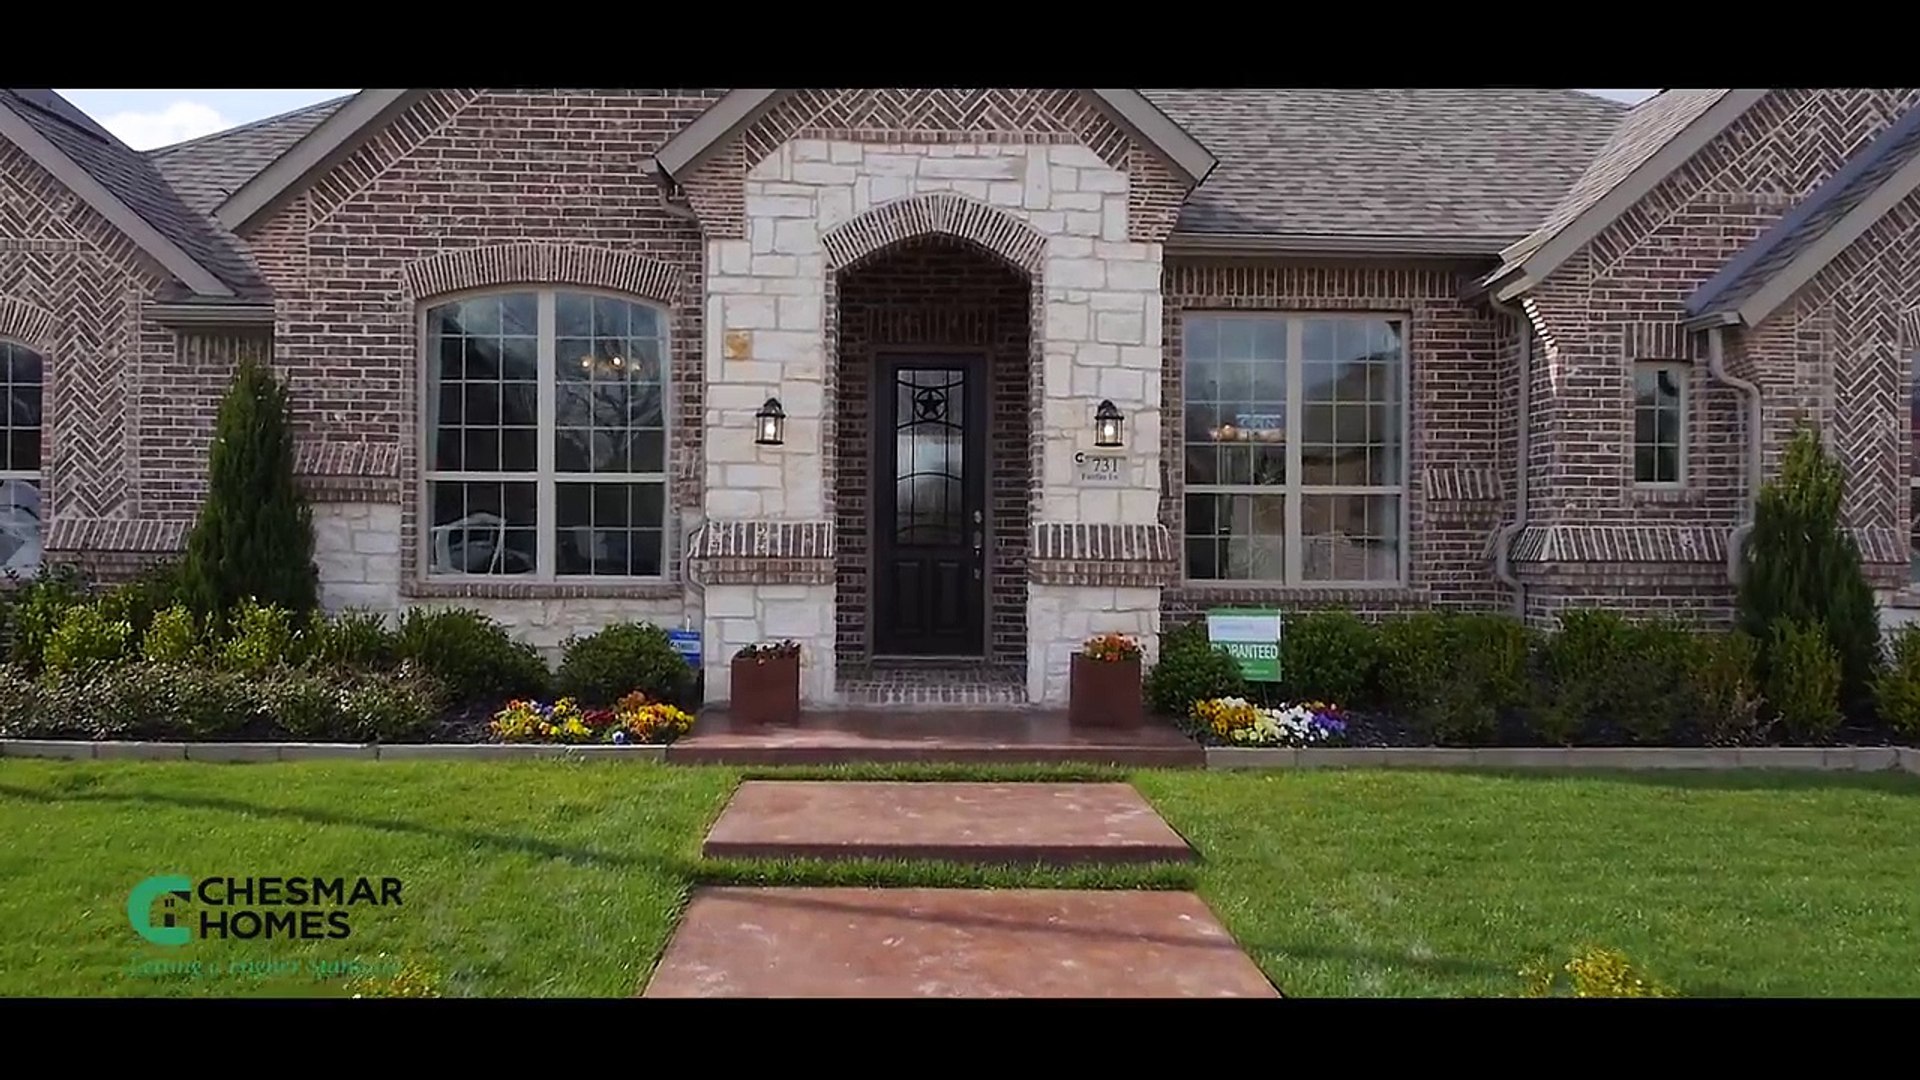 Chesmar Homes Dallas - The Preserve 4K Ultra HD